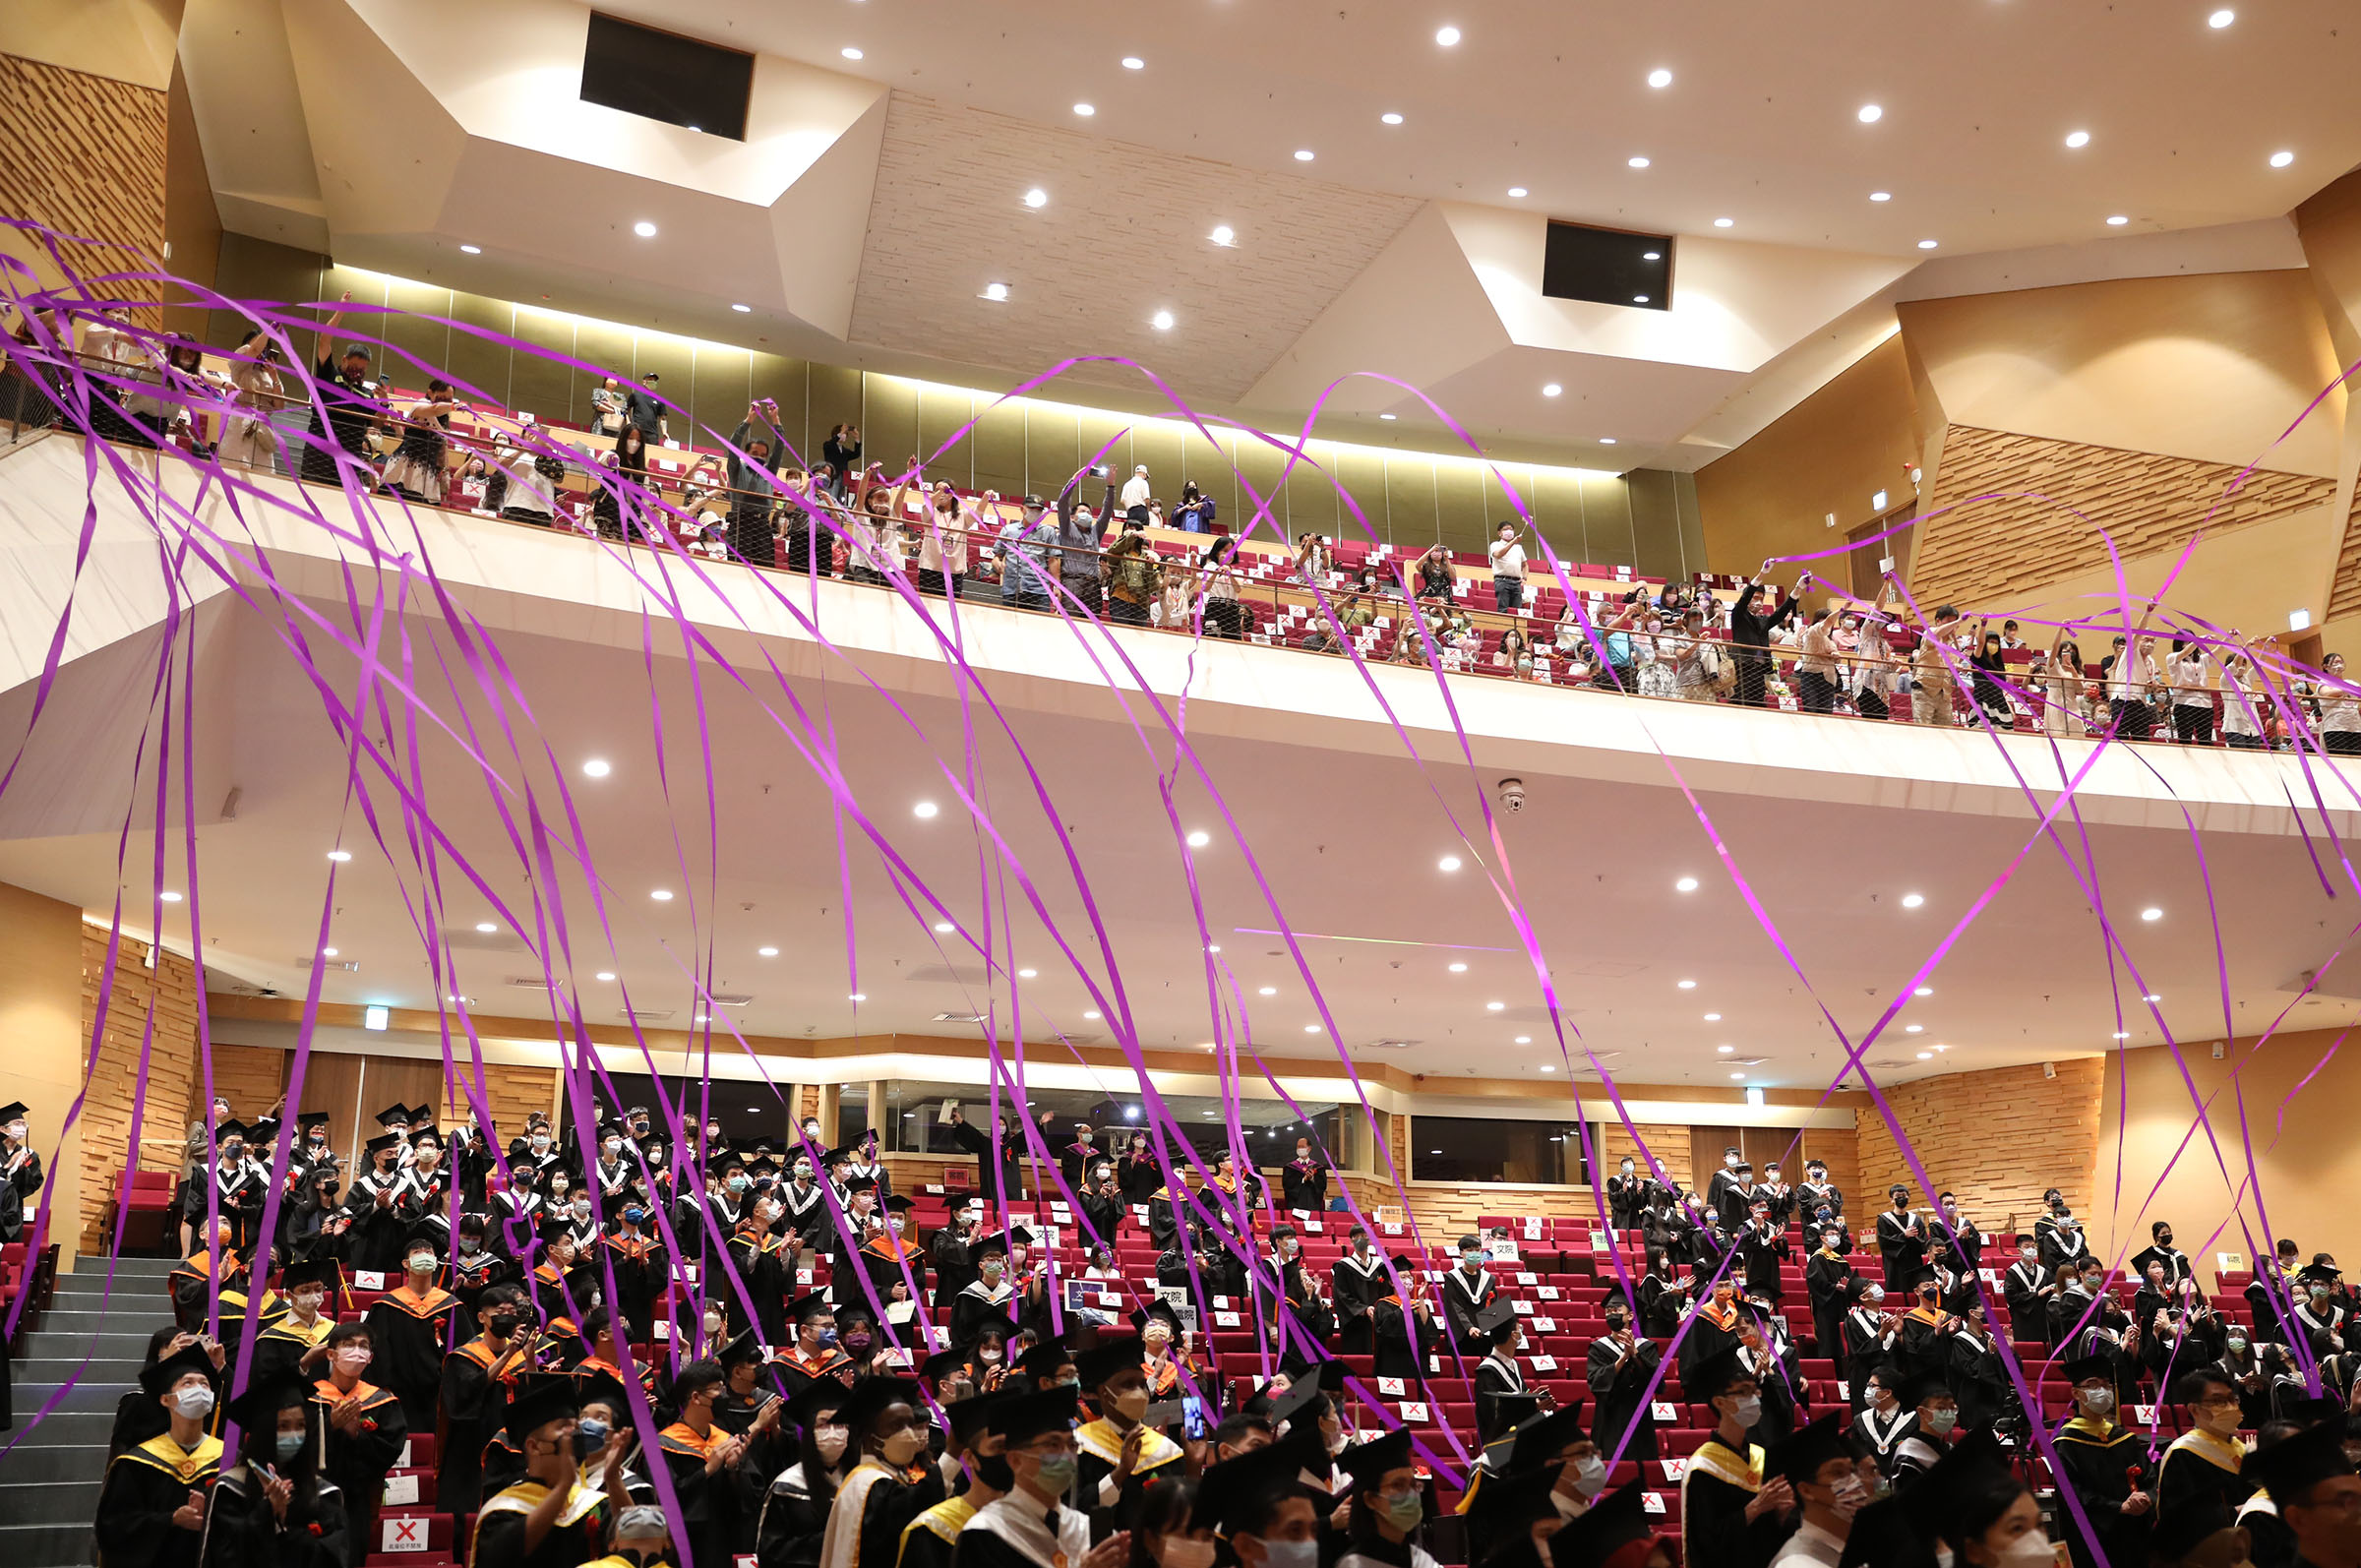 中央大學畢業典禮壓軸，由二樓拋出紫色彩帶，帶給全場畢業生大驚喜。照片課外組提供